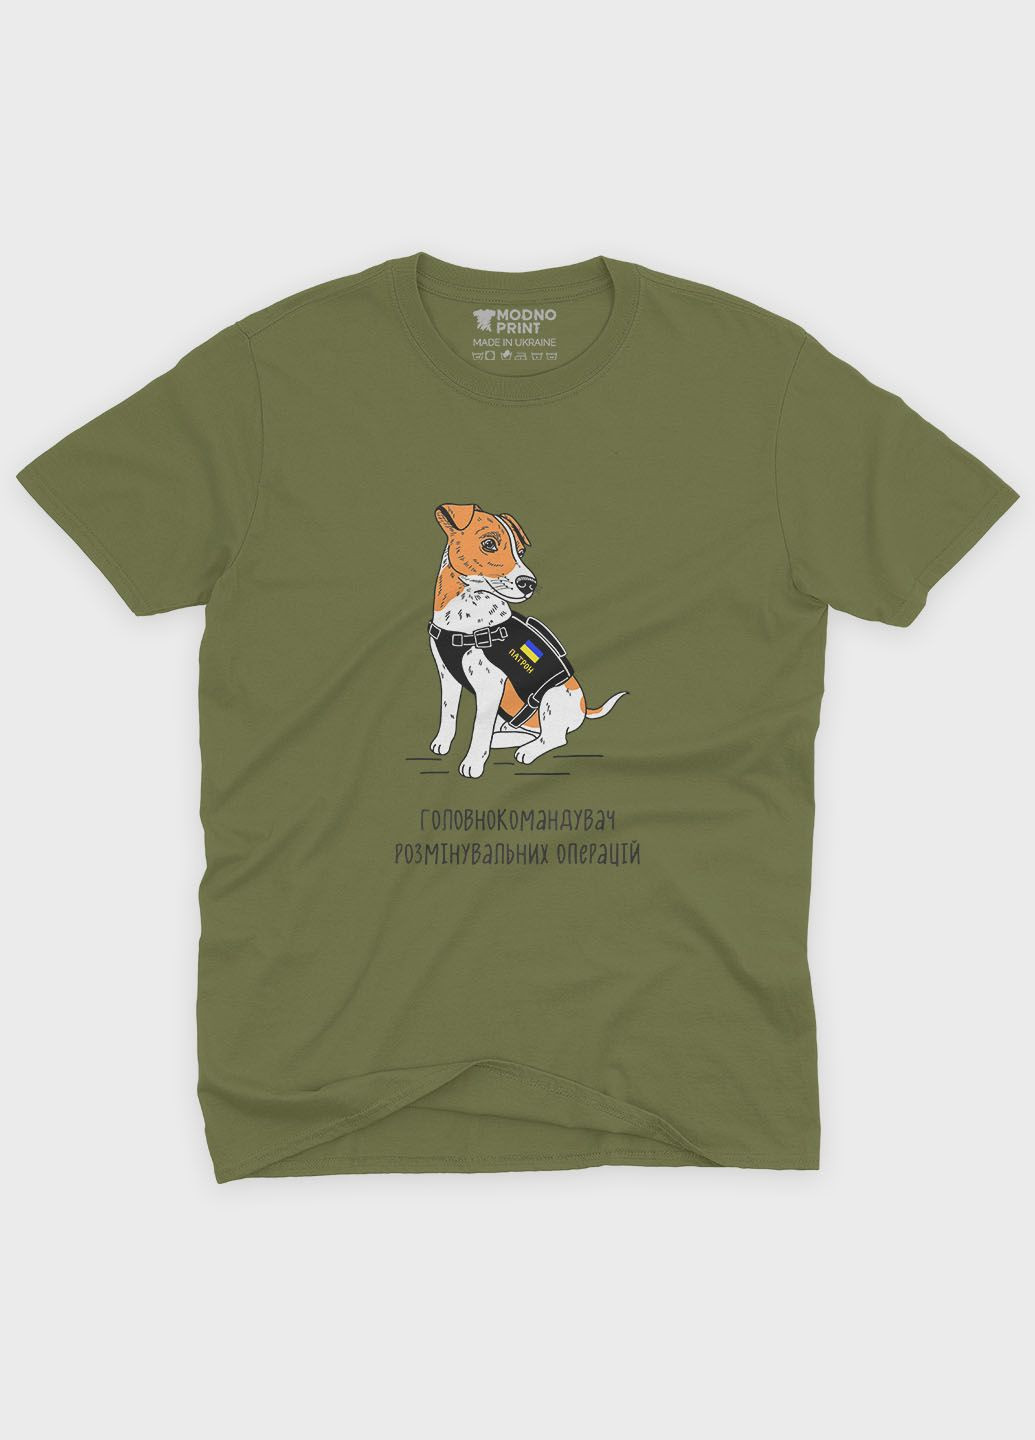 Хаки (оливковая) мужская футболка с патриотическим принтом пес патрон (ts001-5-hgr-005-1-123) Modno